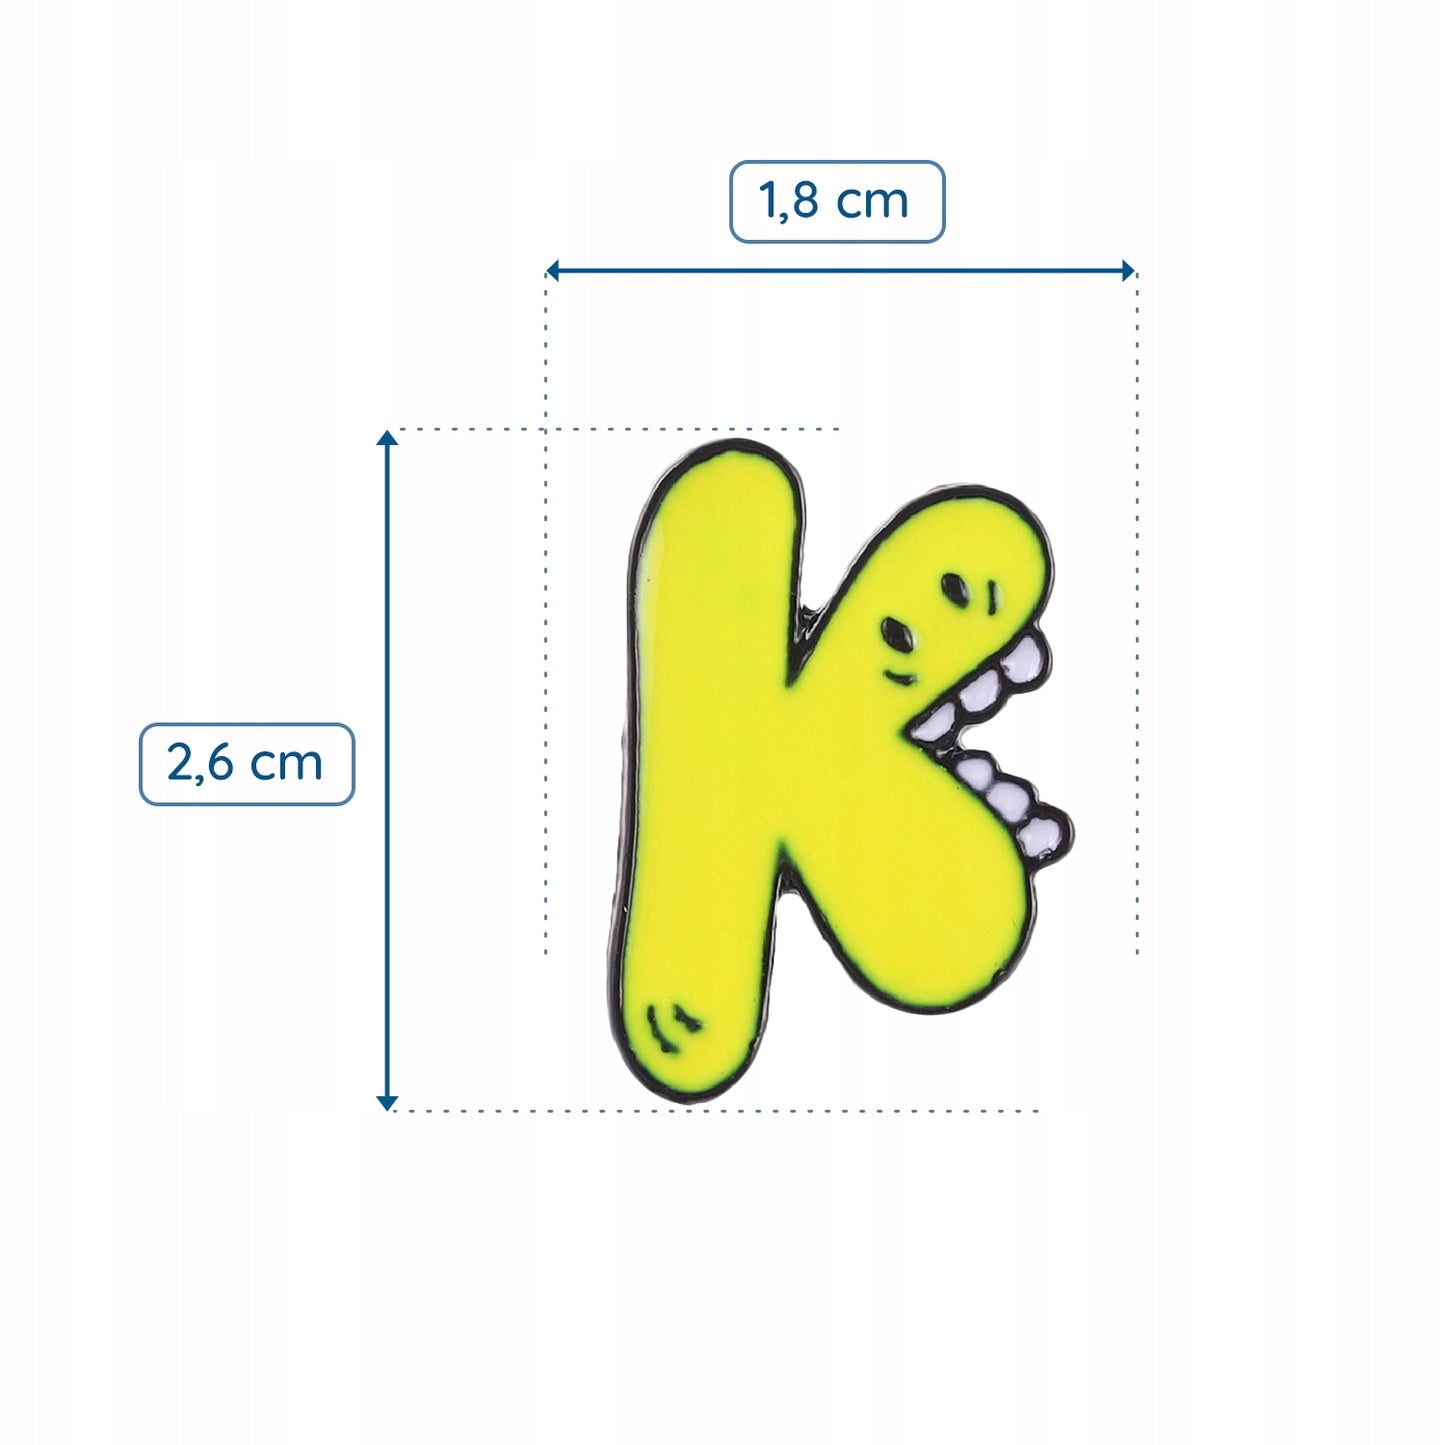 Litera K z zabawną buzią - żółta przypinka